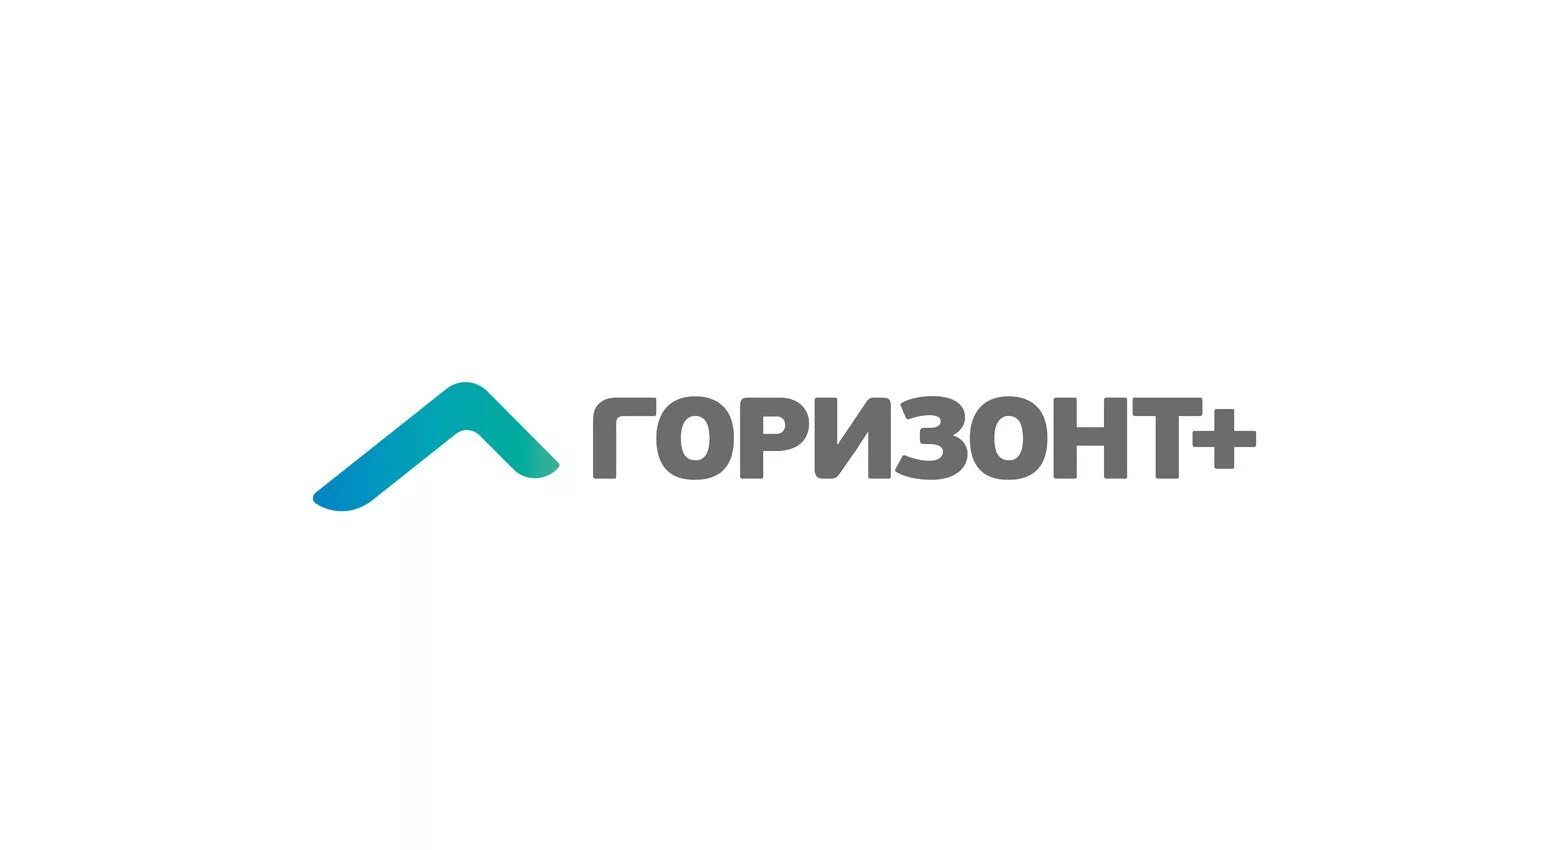 Гк ост. Логотипы компаний. Логотип строительной фирмы. Строительная компания Горизонт логотип. Логотипы российских строительных компаний.